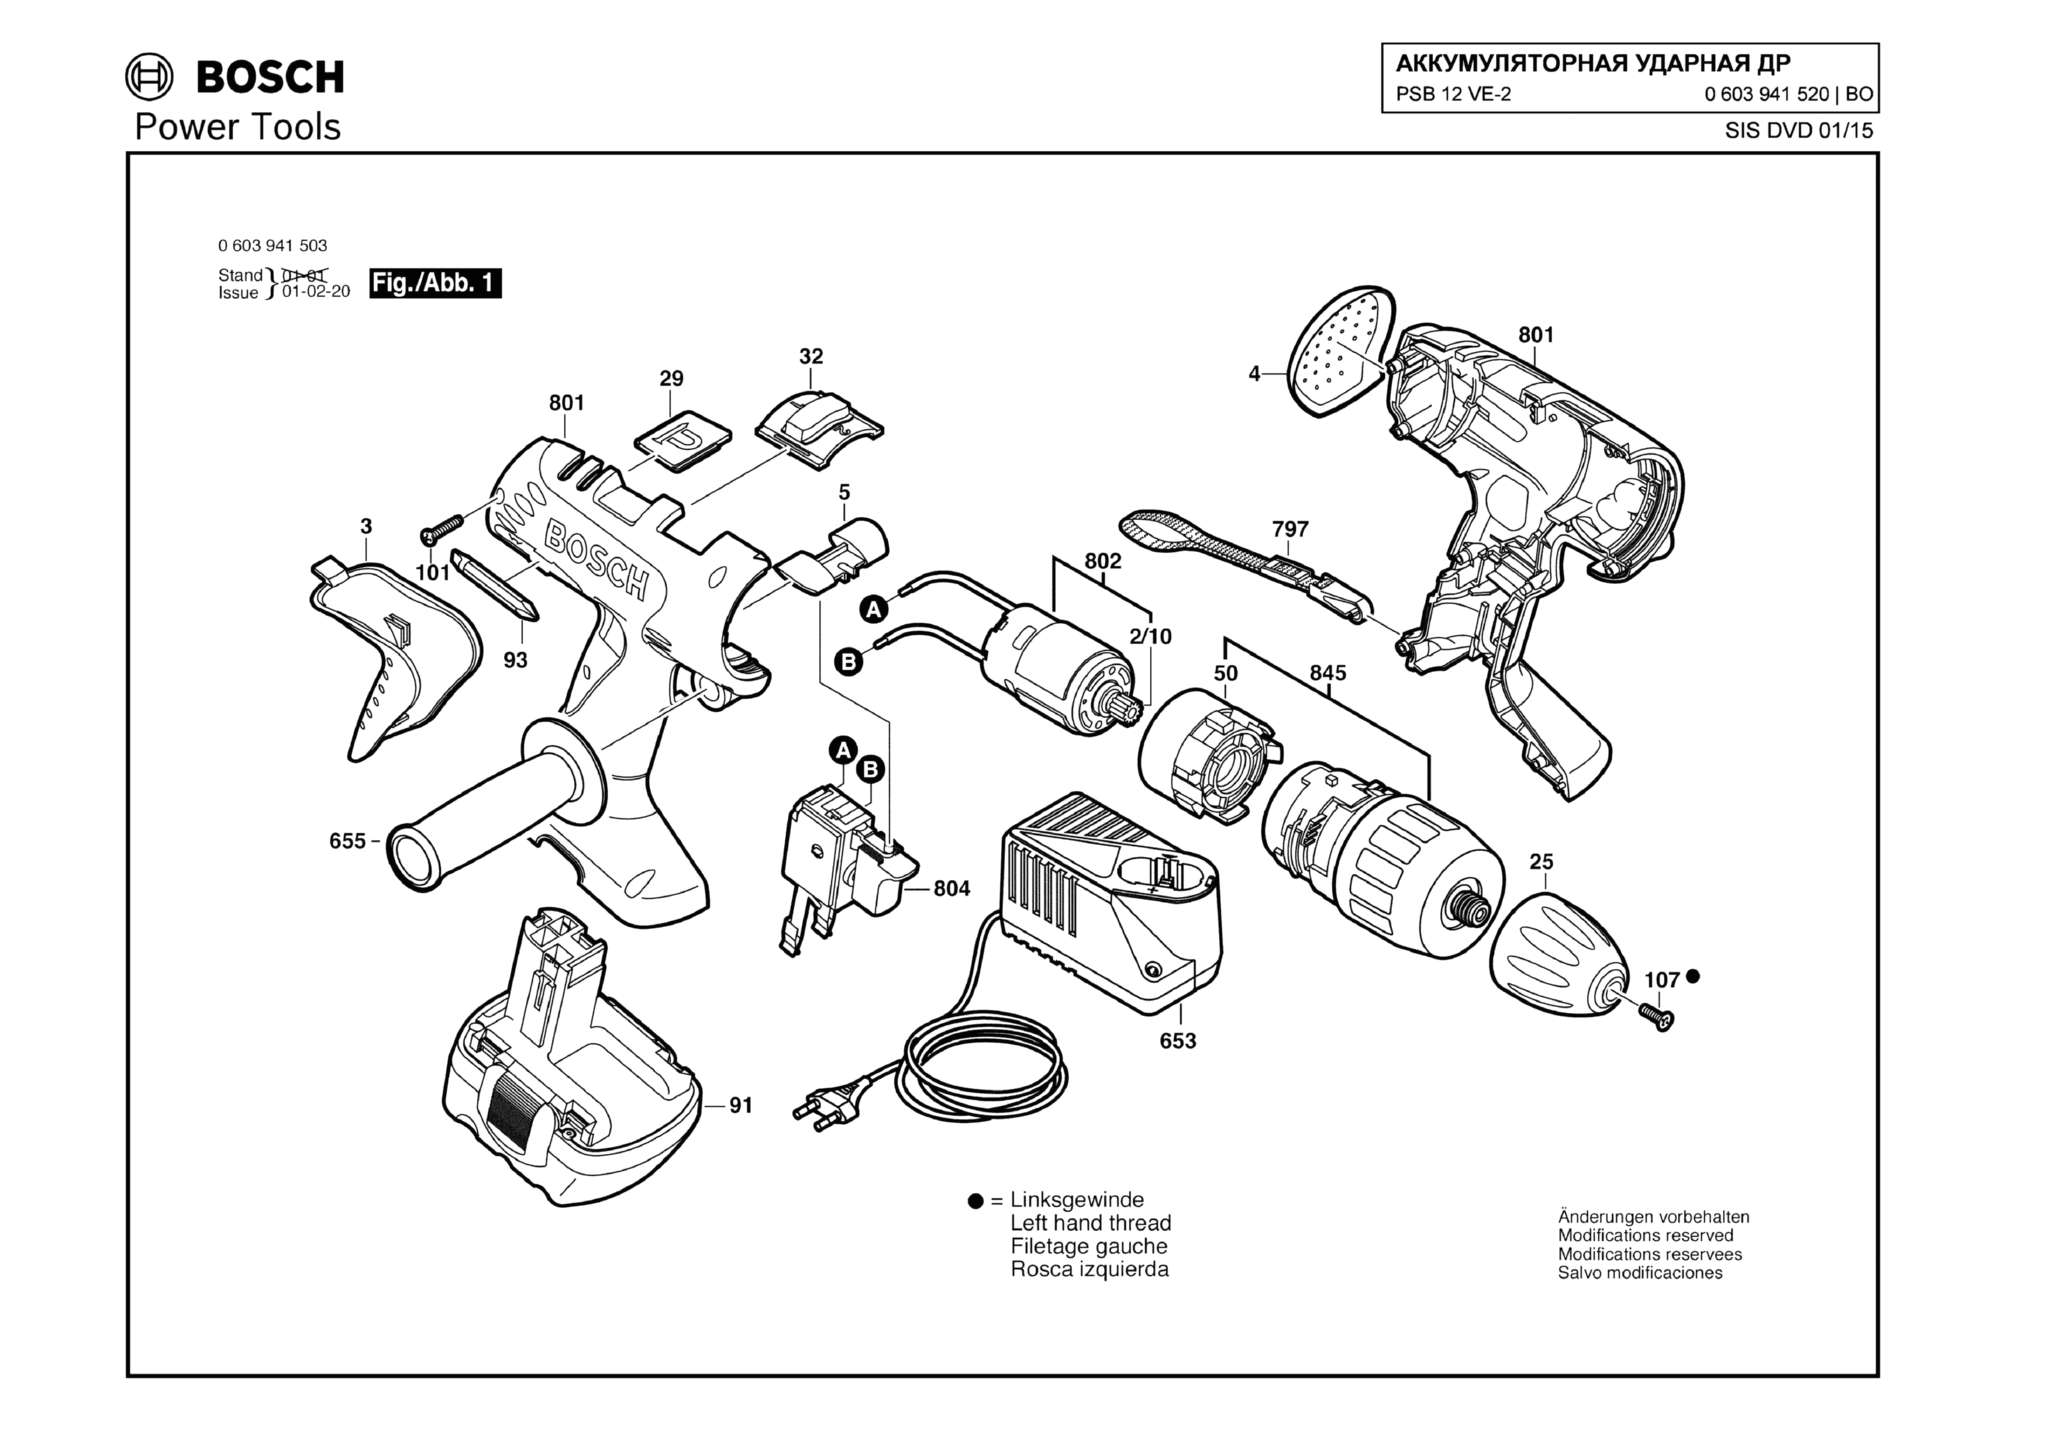 Запчасти, схема и деталировка Bosch PSB 12 VE-2 (ТИП 0603941520)